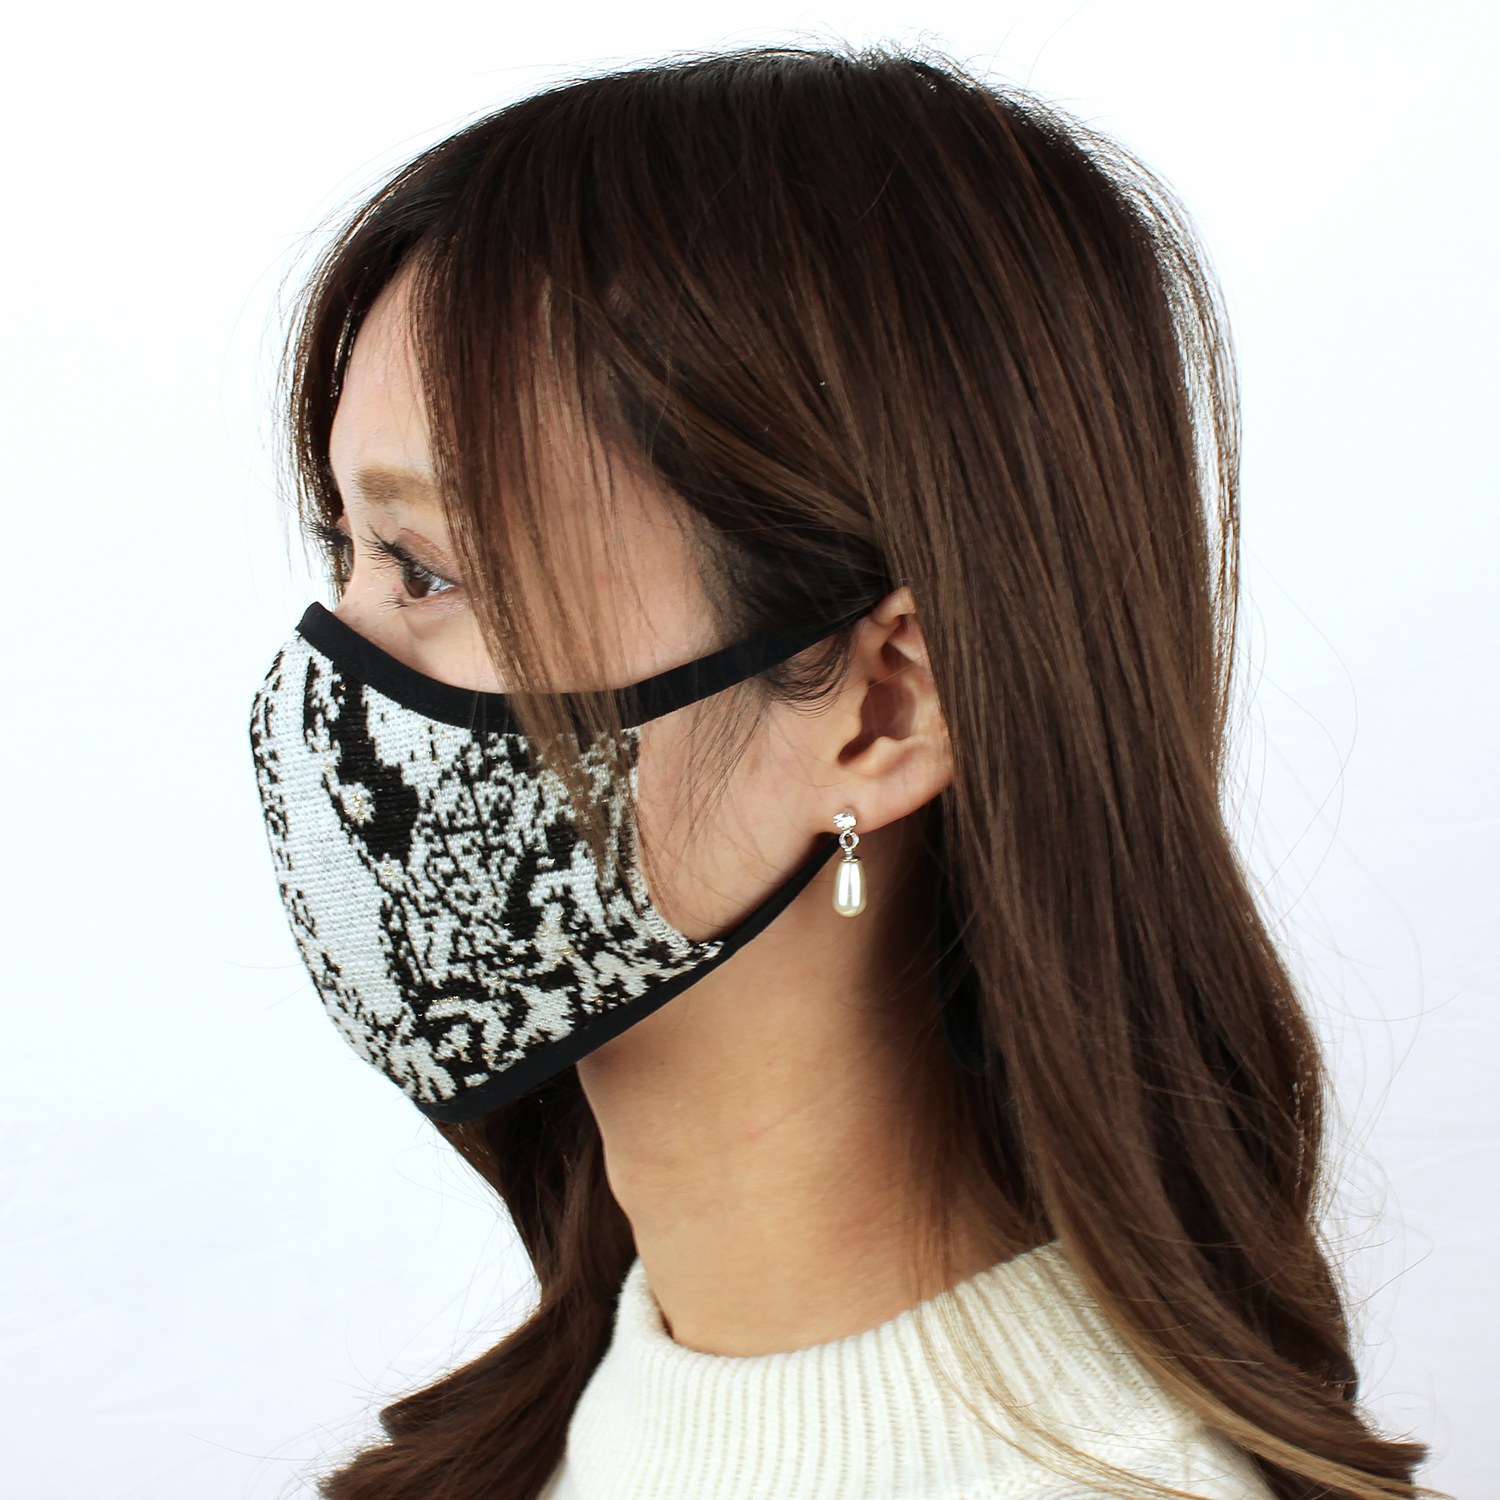 ニジイロキャンプ マスクケース付 ファッションマスク